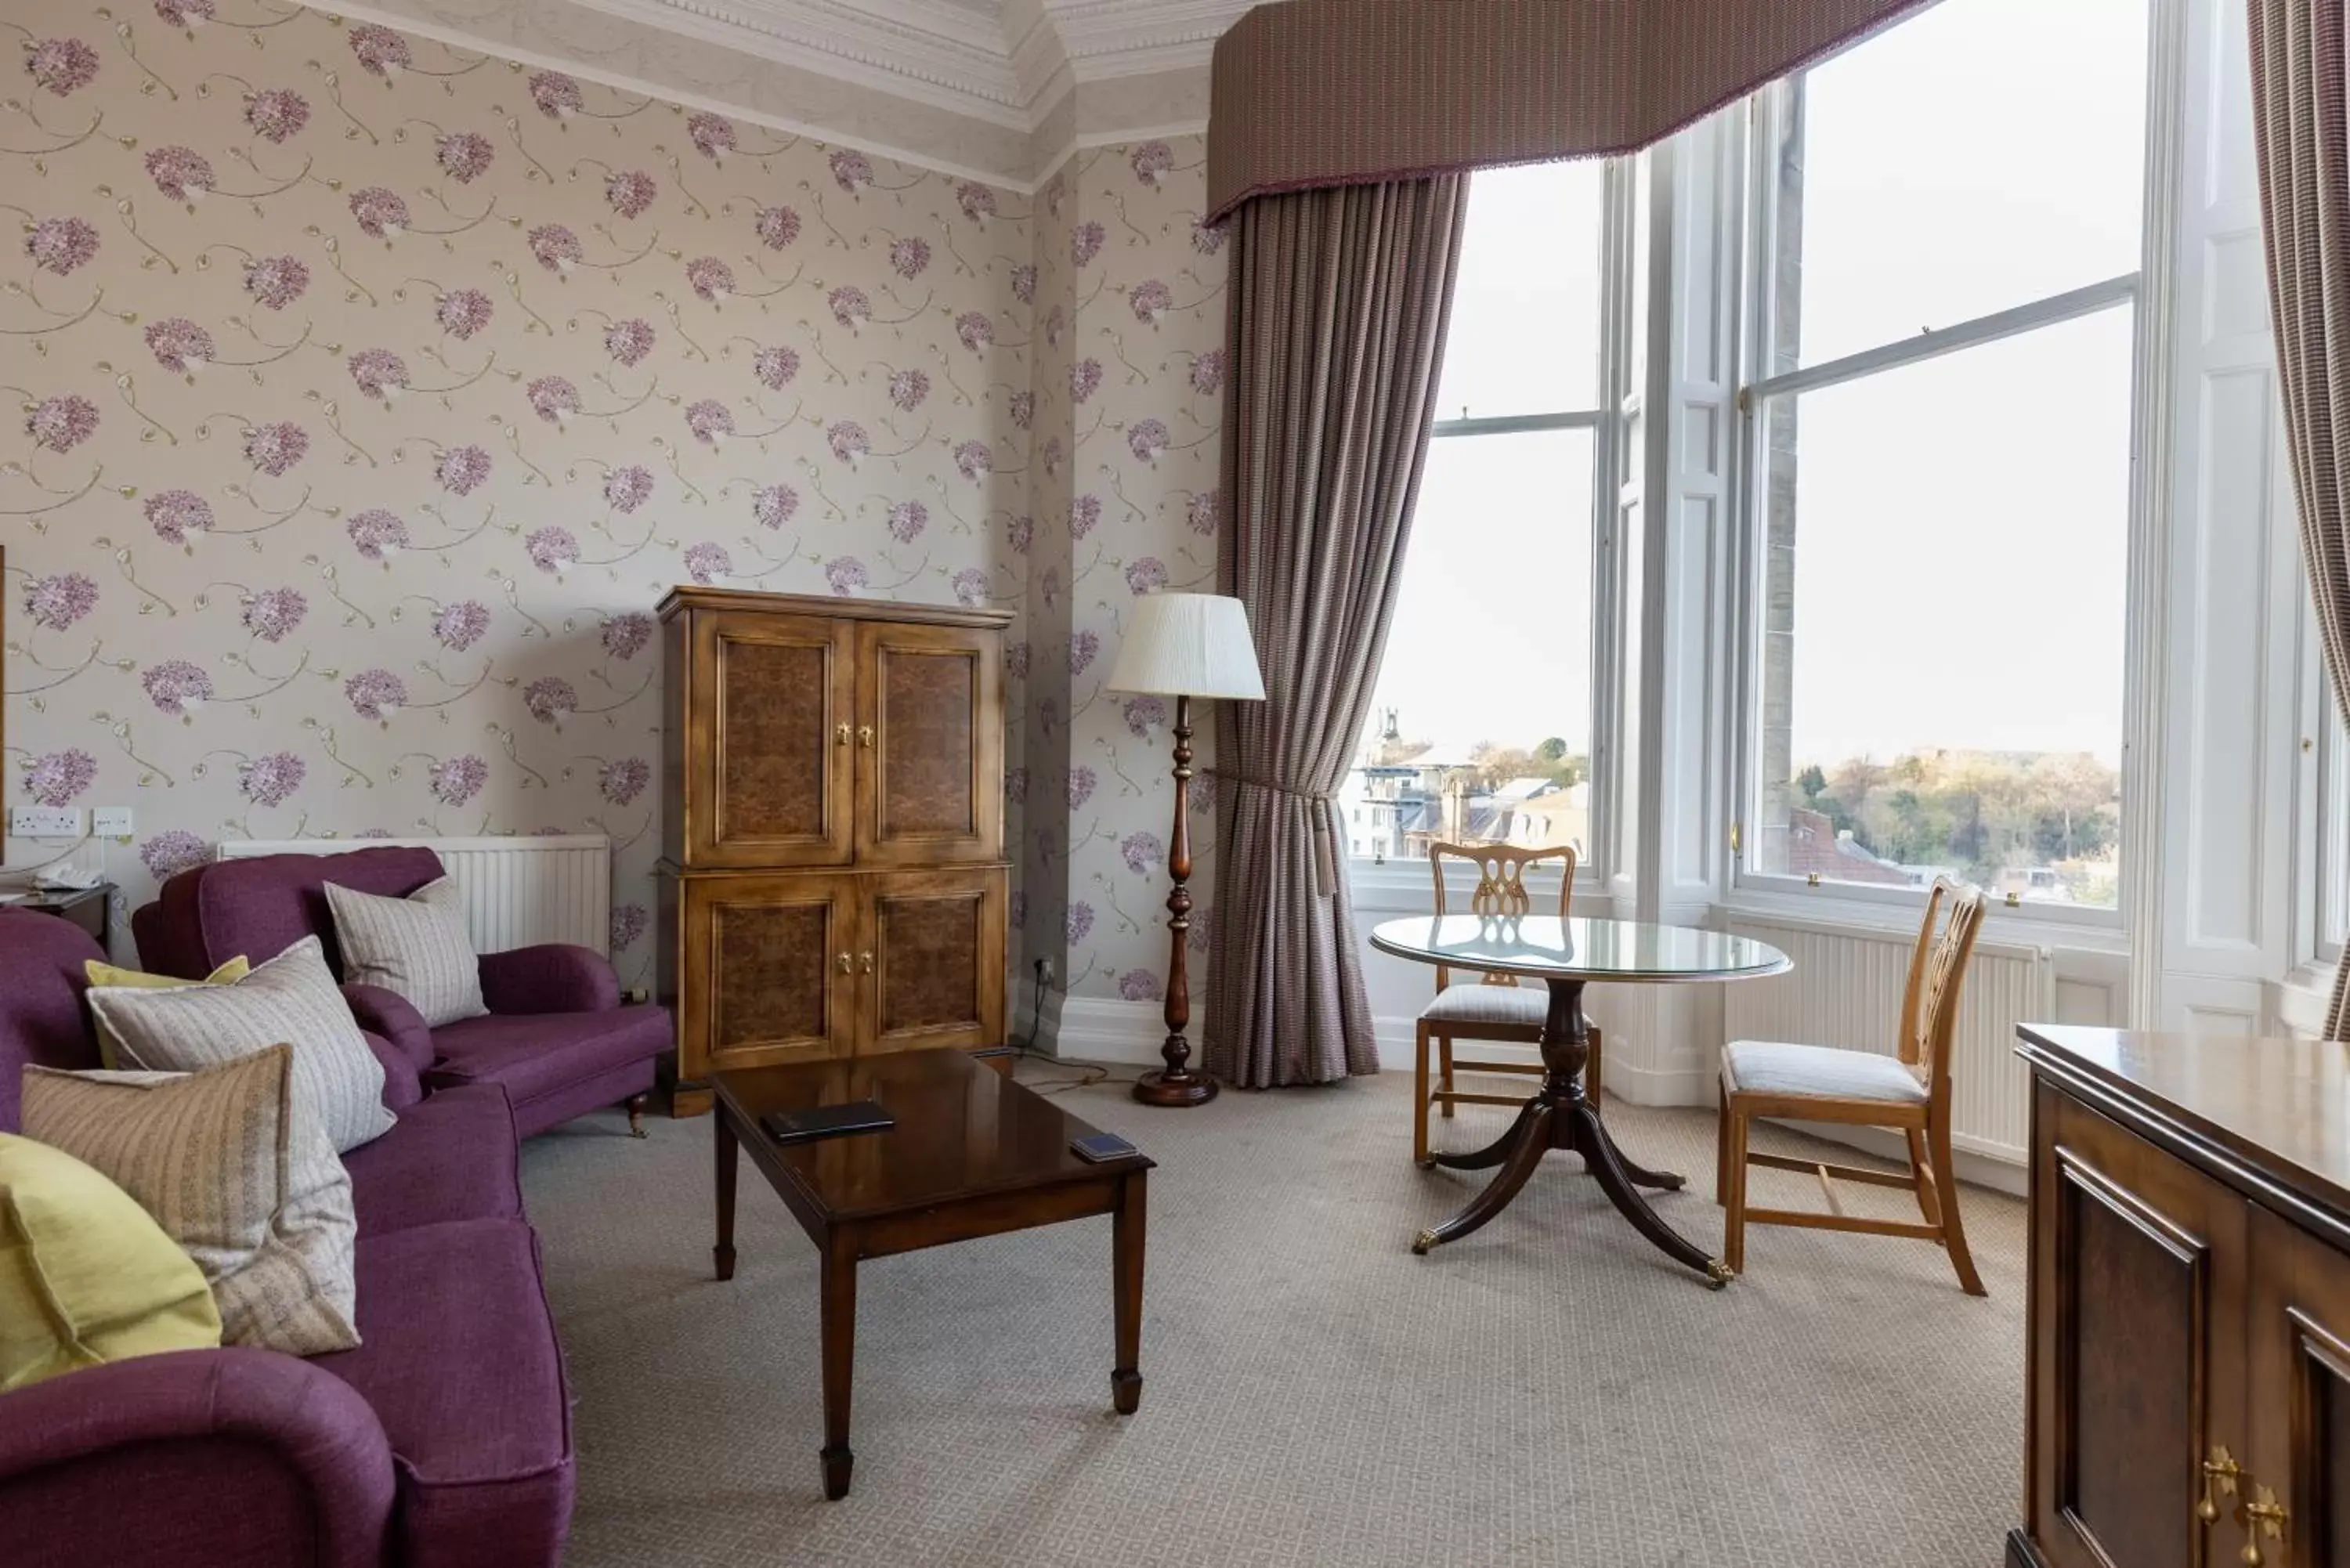 Bedroom, Seating Area in Hapimag Resort Edinburgh